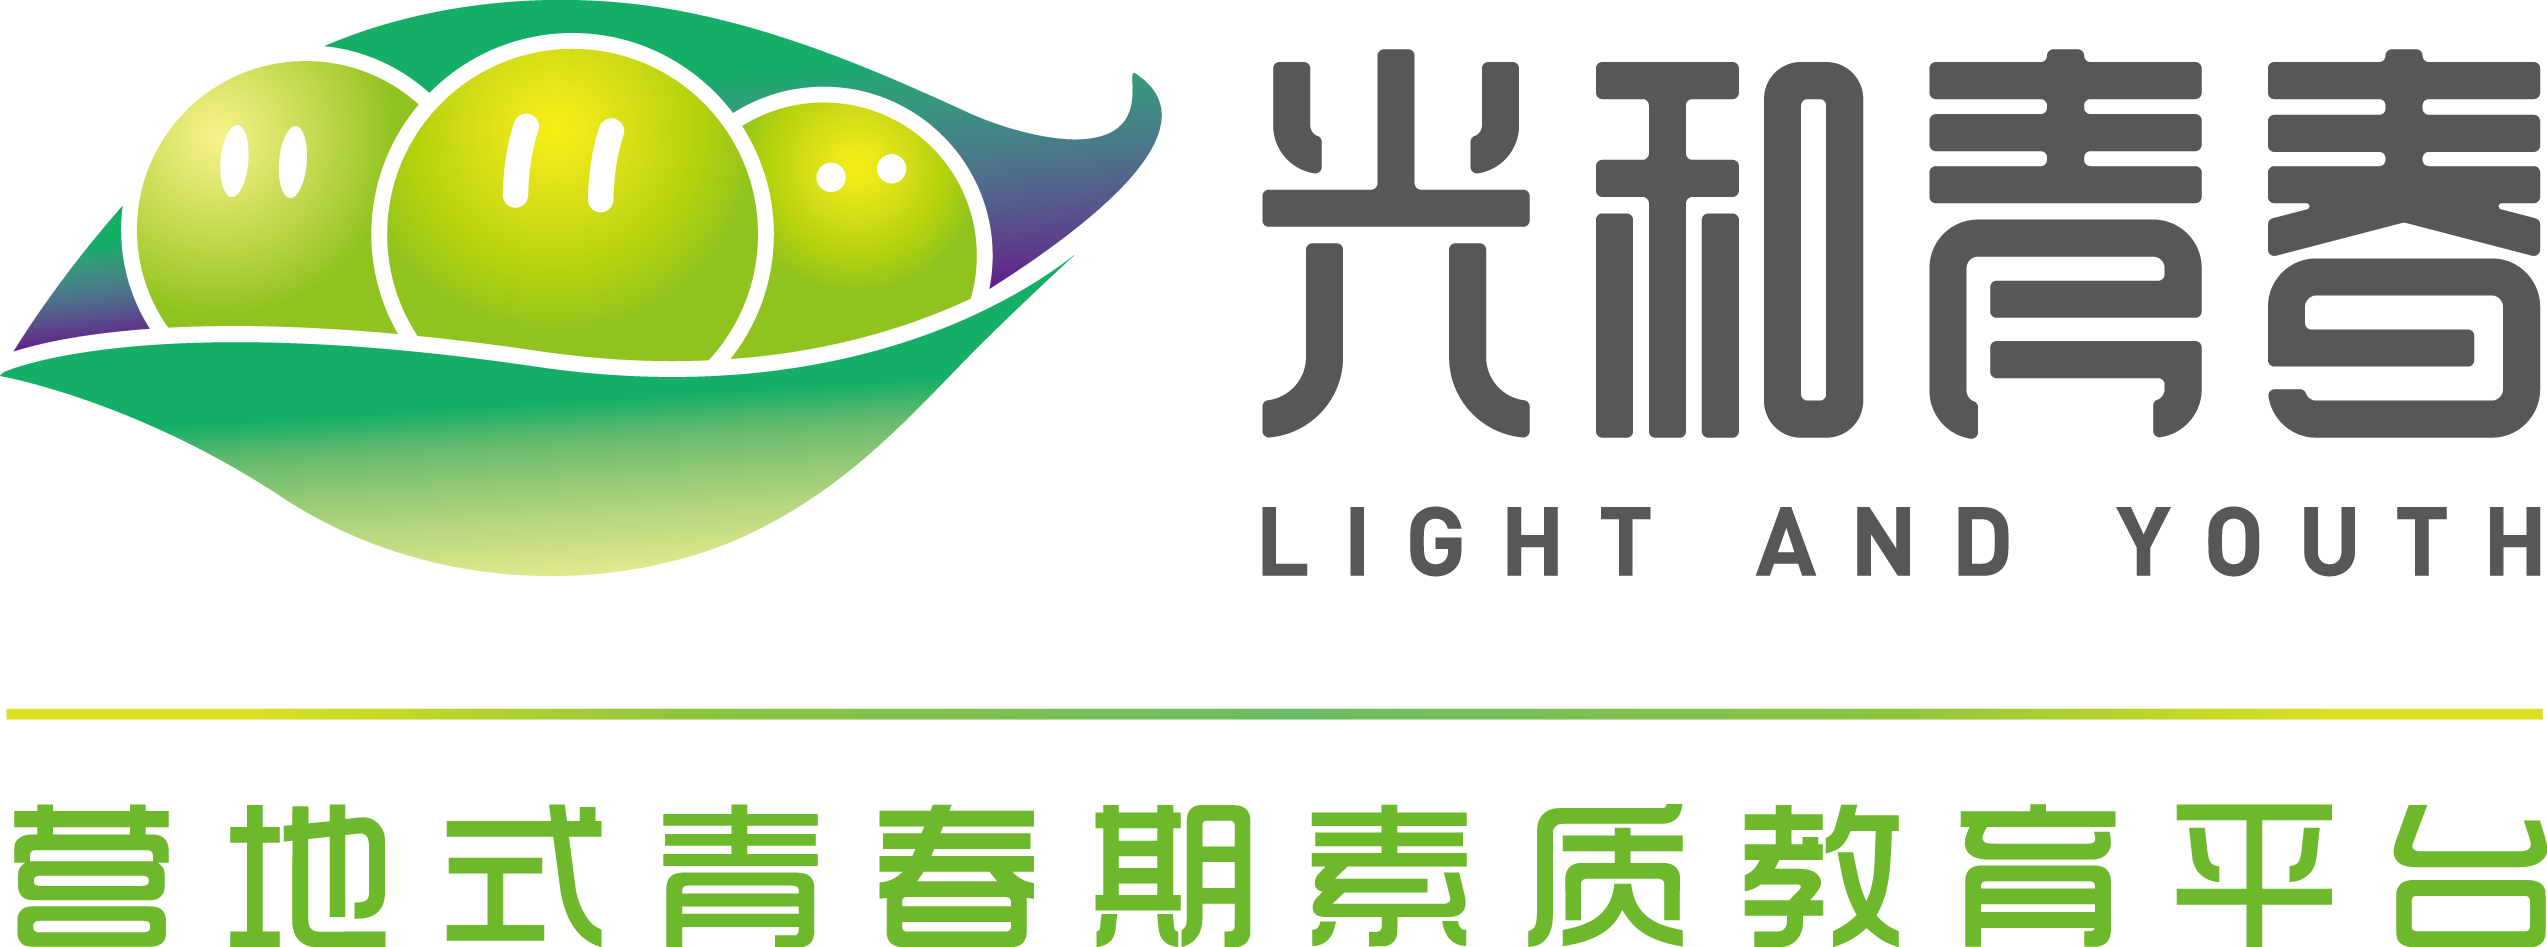 光和青春logo—横版.png